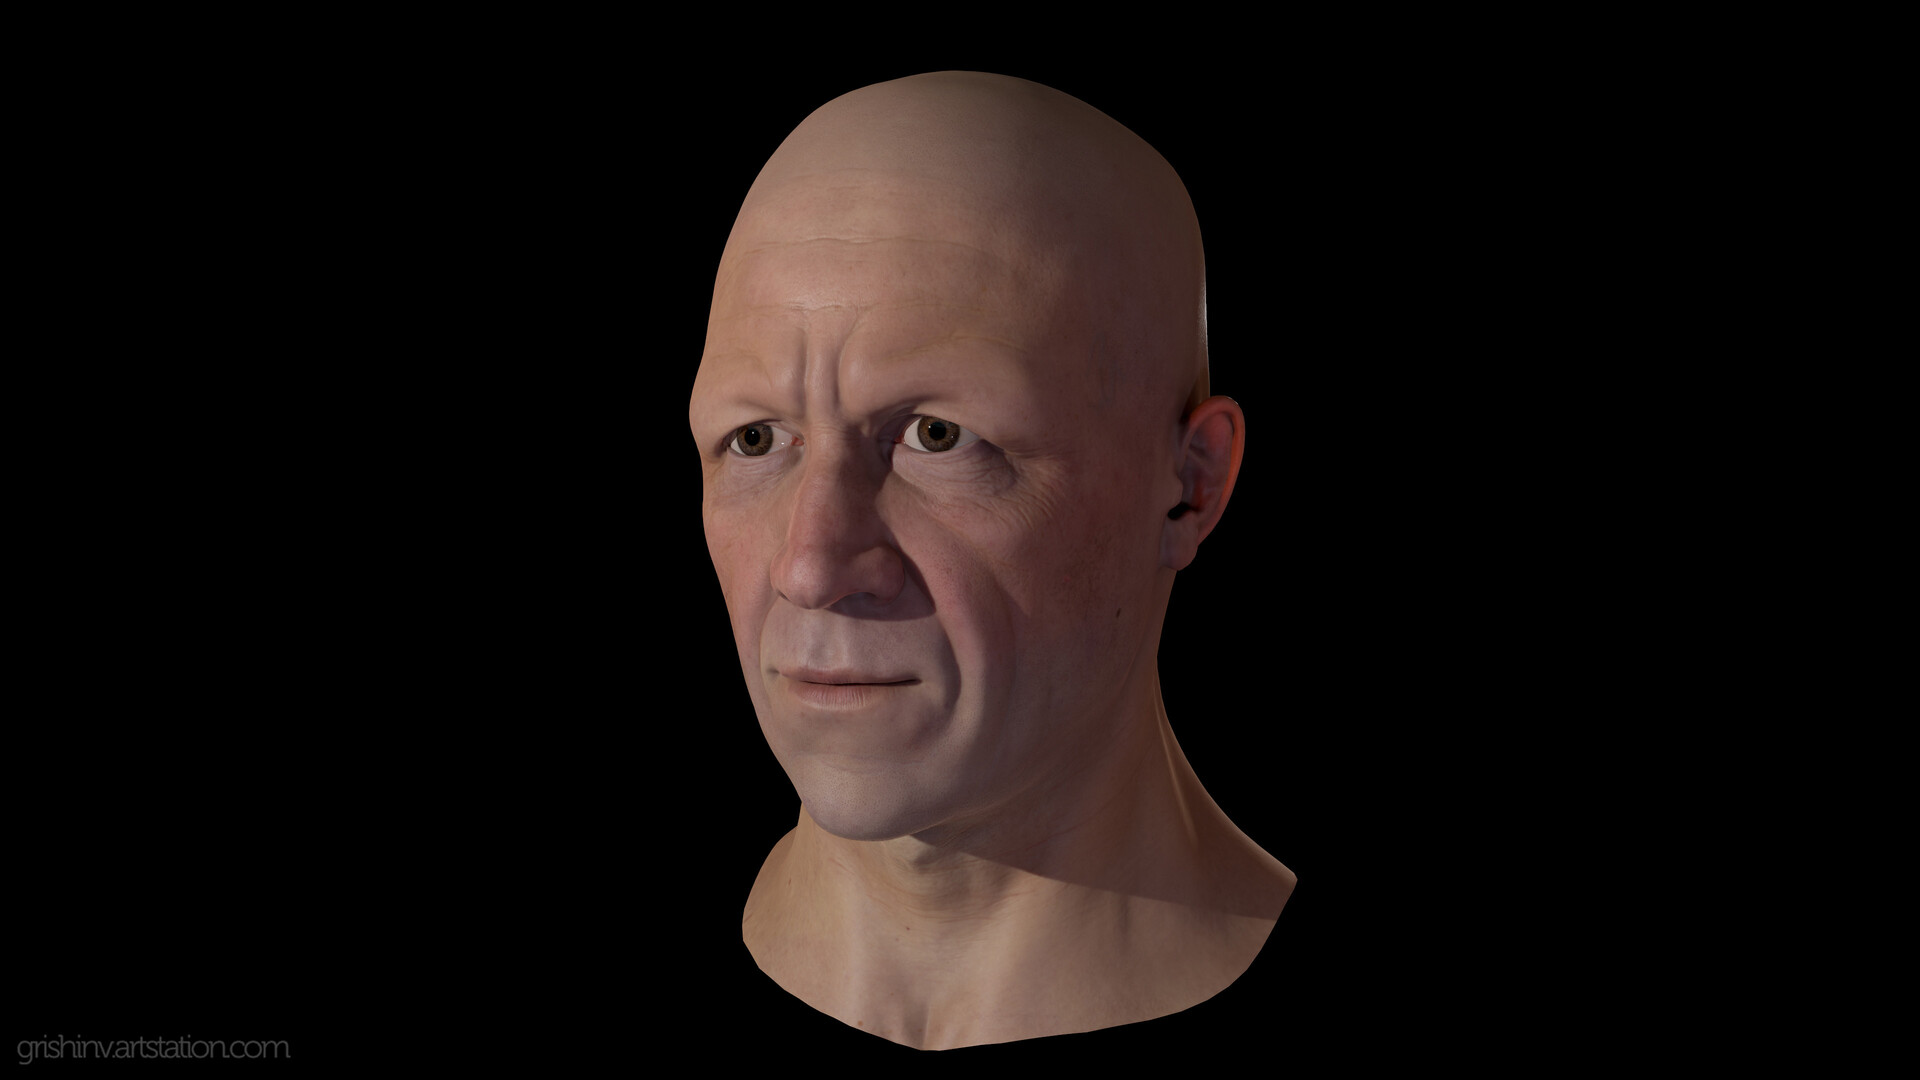 ArtStation - Man's head